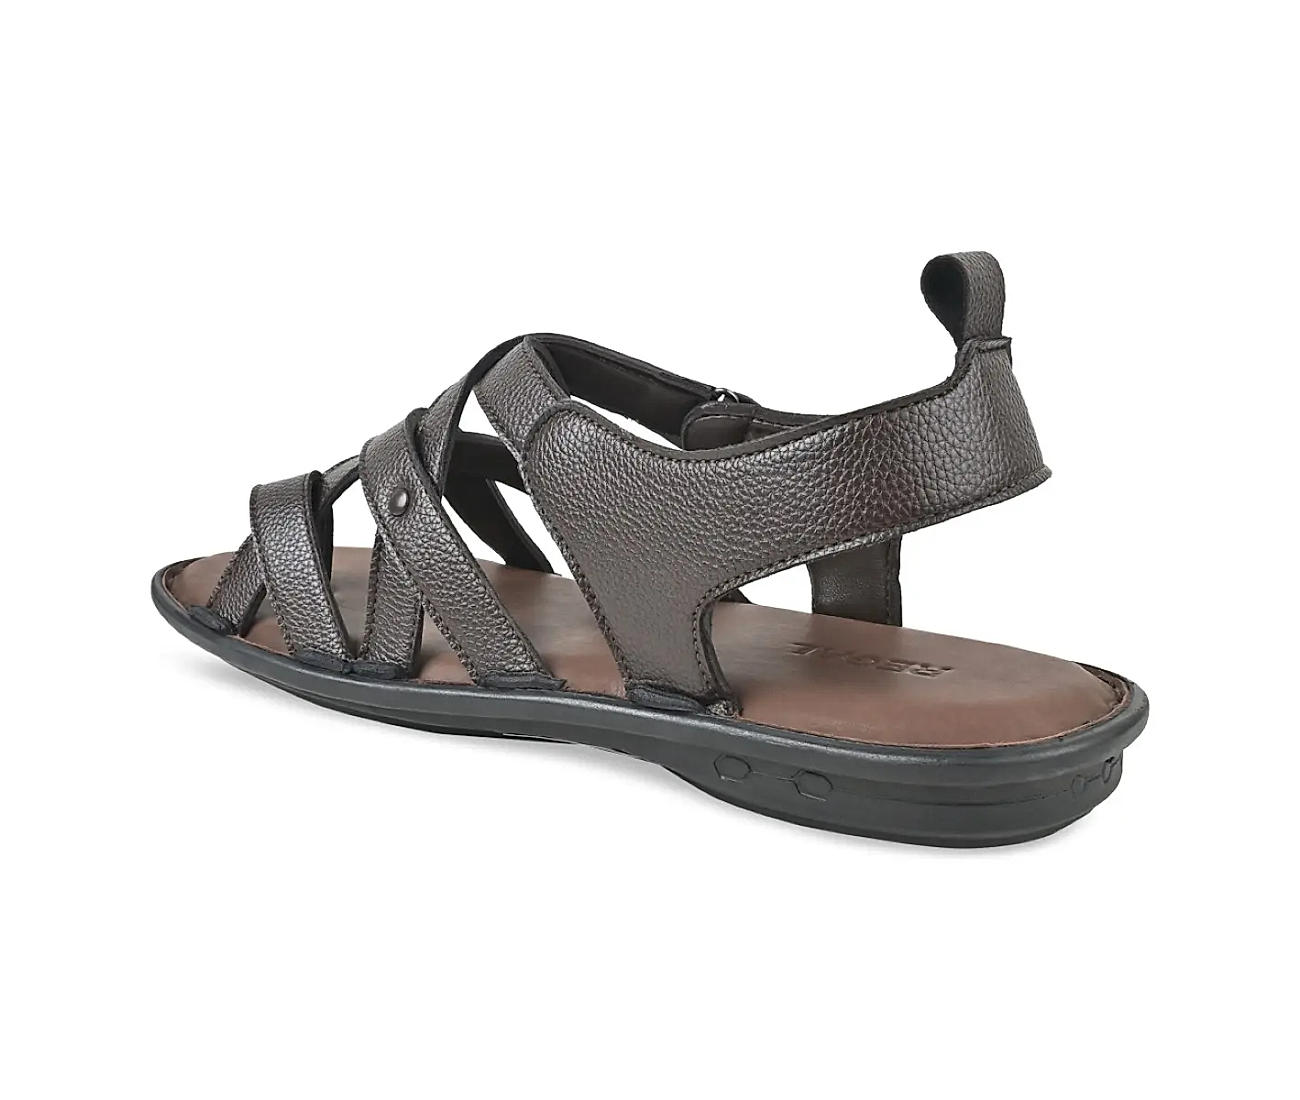 Buy Black Leather Sandals for Men Men's Open Toe Sandals Mens Gladiator  Sandals Slide on Strappy Summer Shoes for Men Greek Men's Sandals Online in  India - Etsy